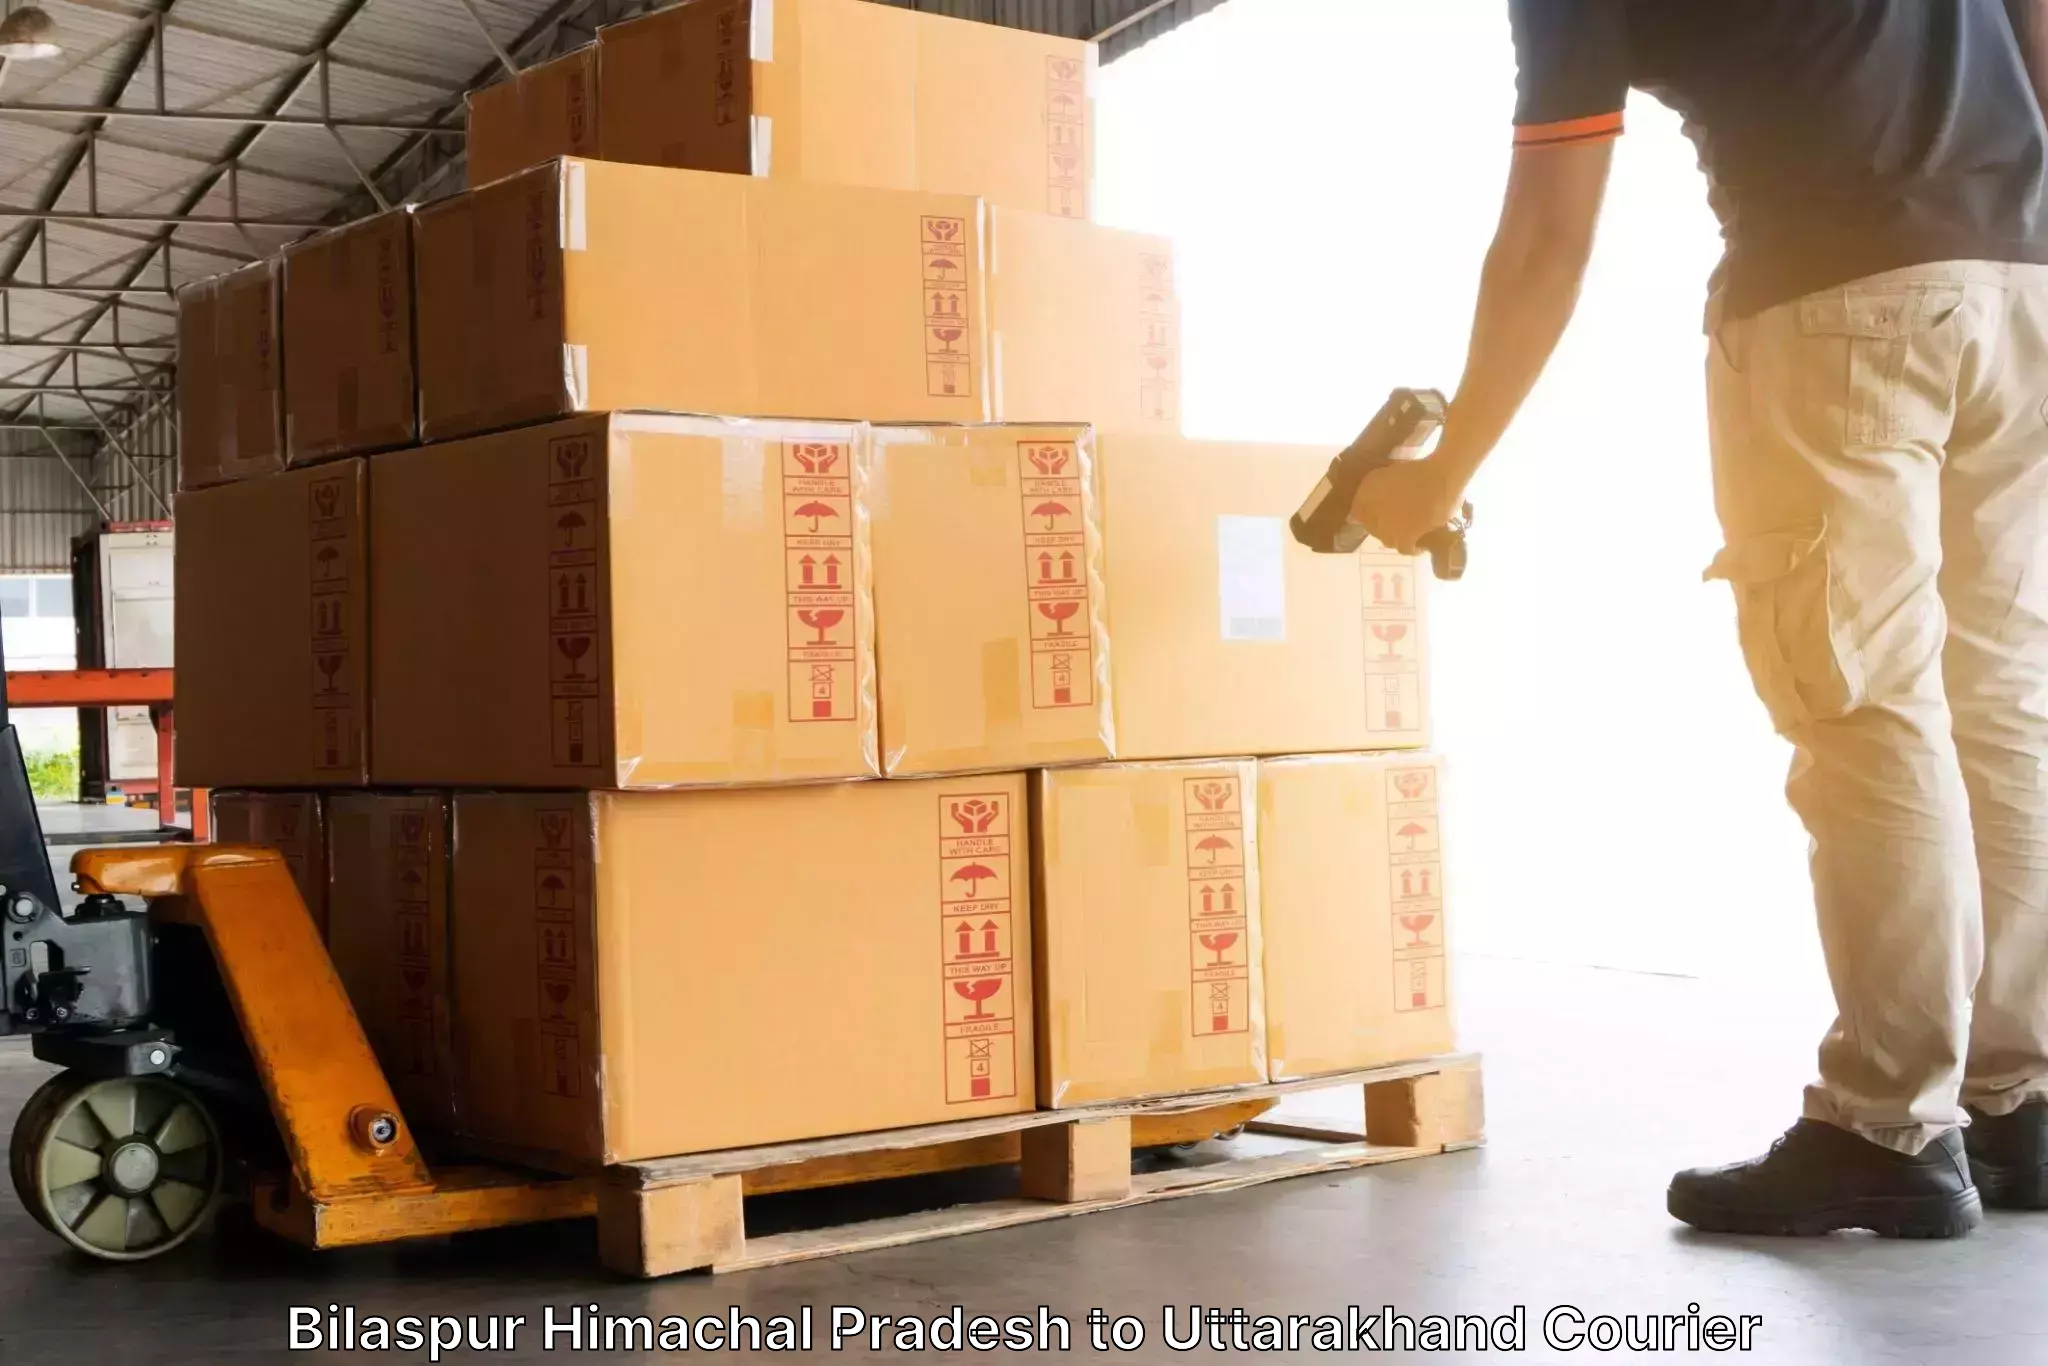 Cargo courier service Bilaspur Himachal Pradesh to Roorkee